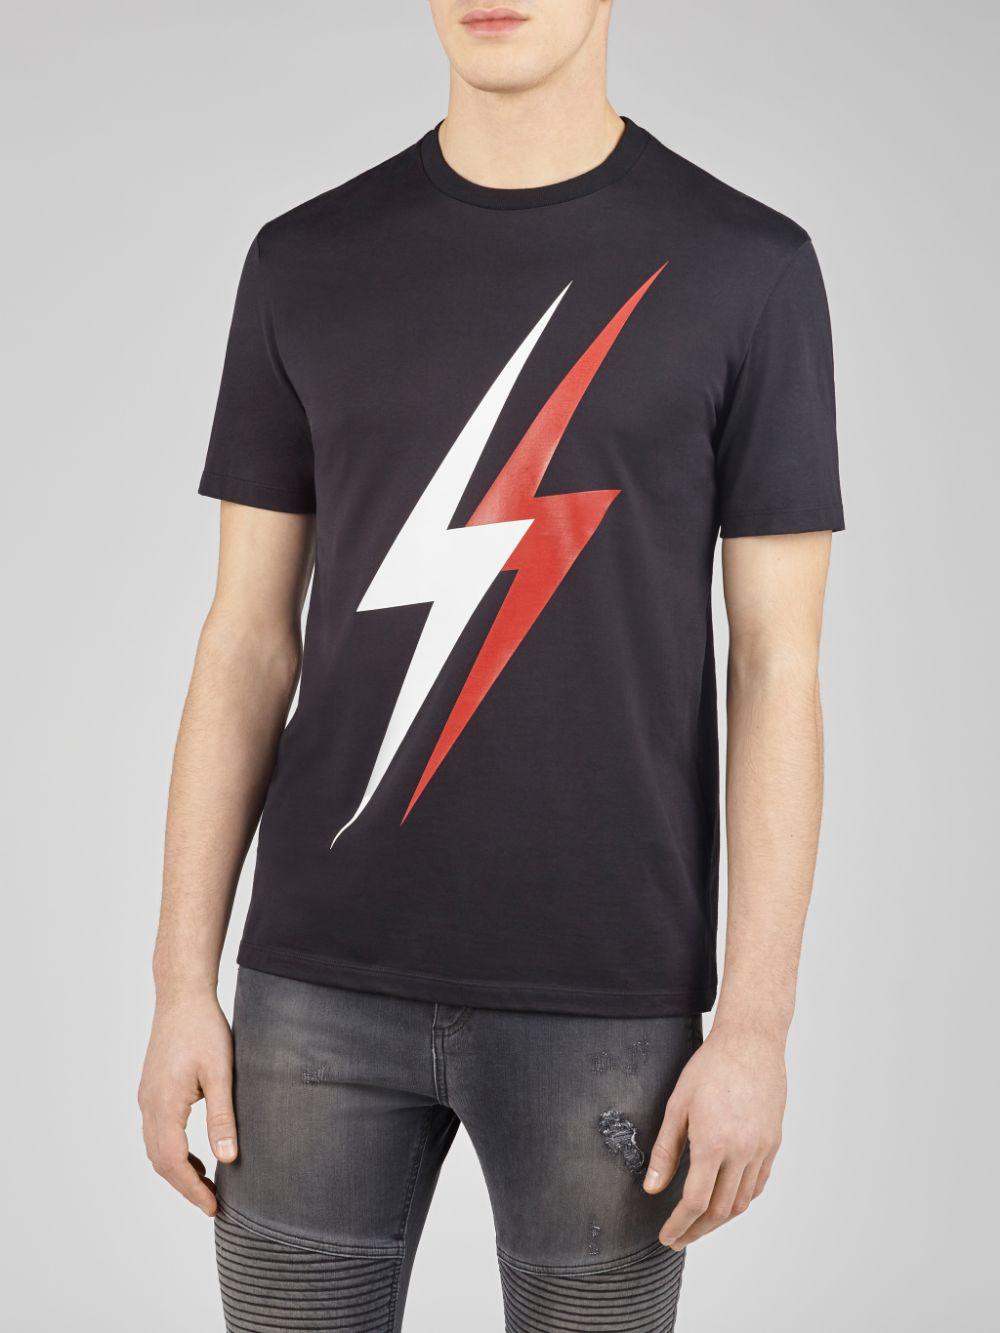 Neil Barrett Double Thunderbolt Jersey T-shirt in Black for Men - Lyst